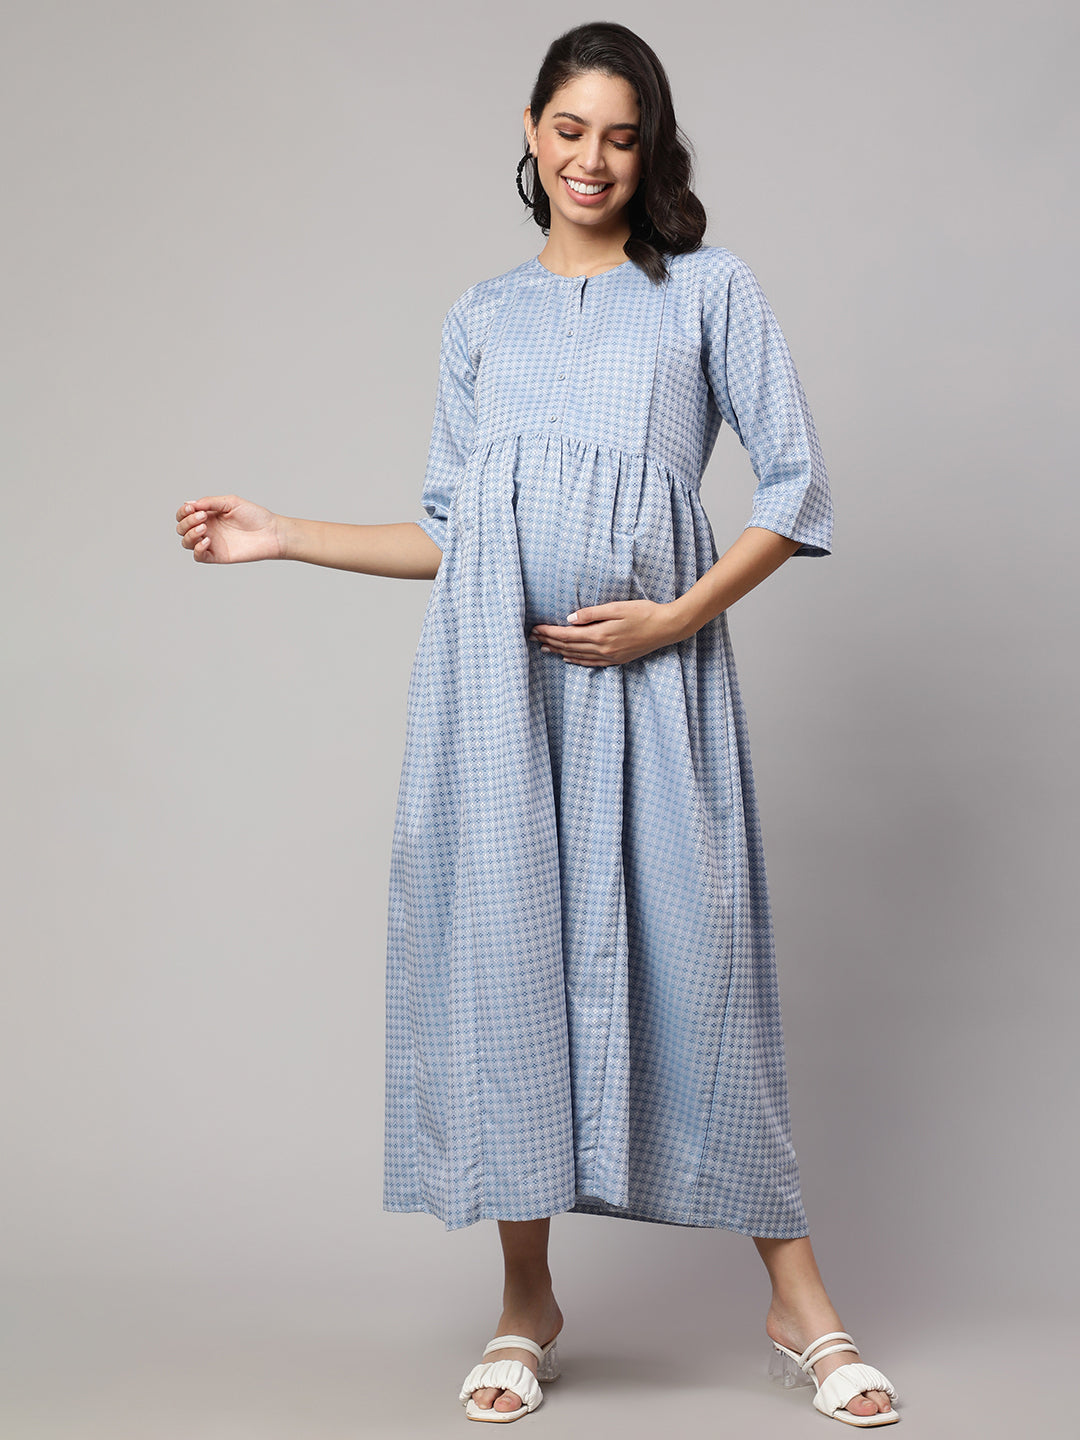 Women's Blue Printed Flared Maternity Dress - Nayo Clothing